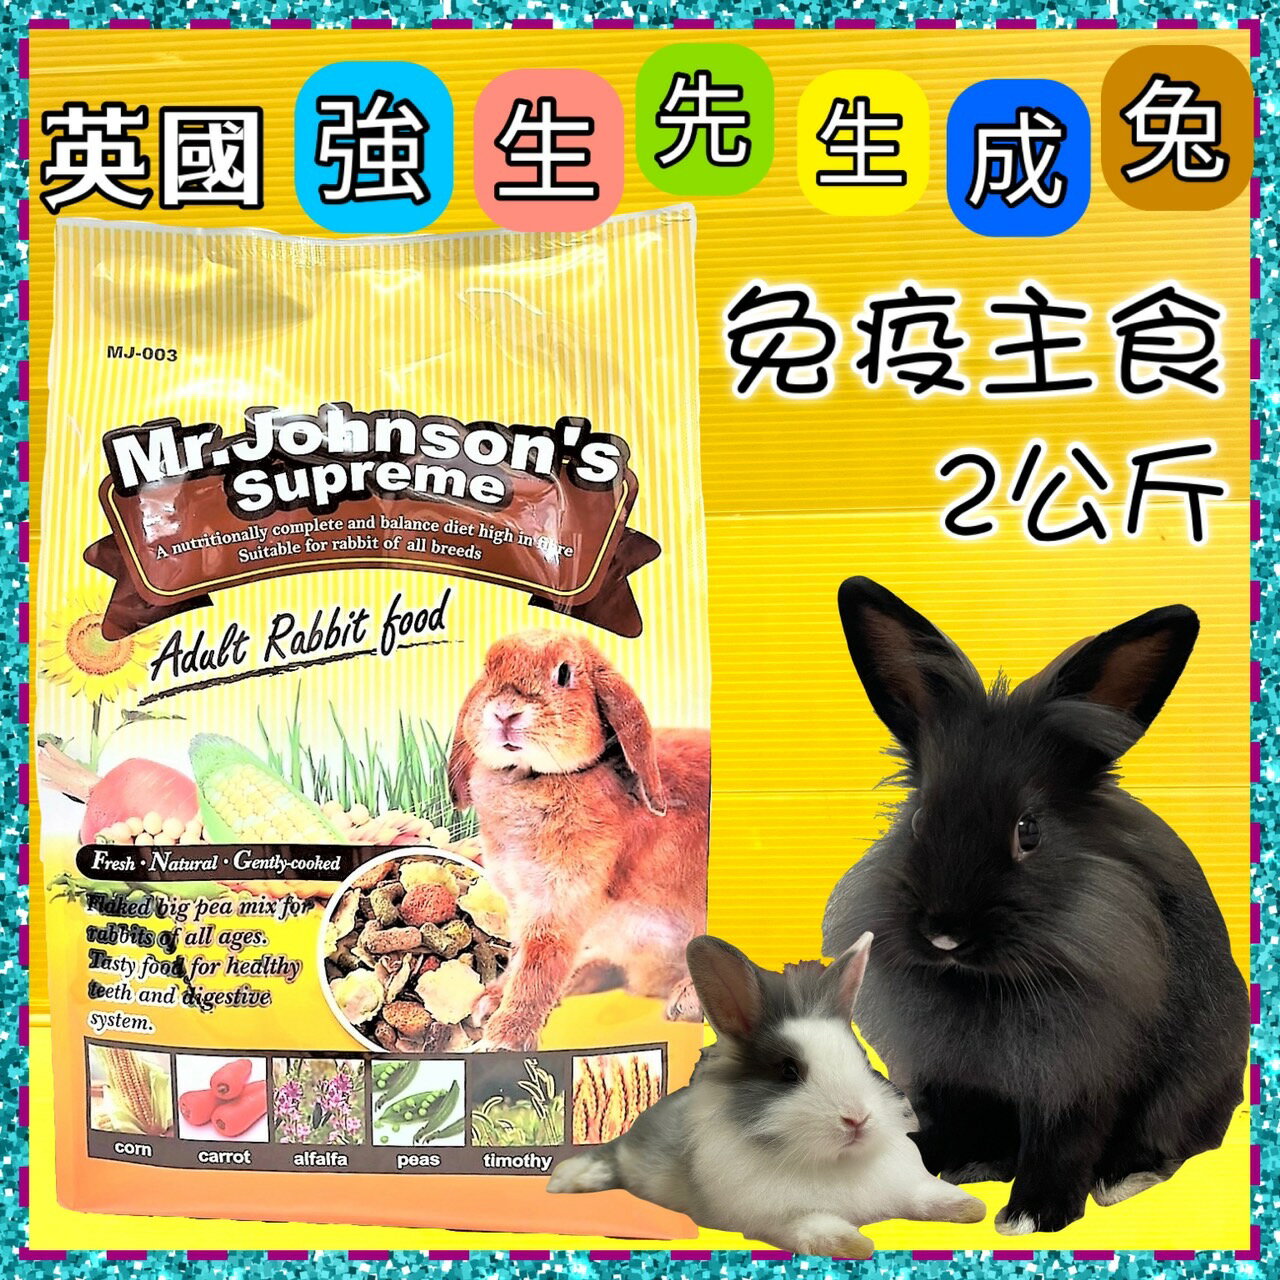 ✪四寶的店n✪ 附發票~Mr.Johnson's 英國強生兔 免疫主食 兔飼料 兔料主食2kg 現貨供應~